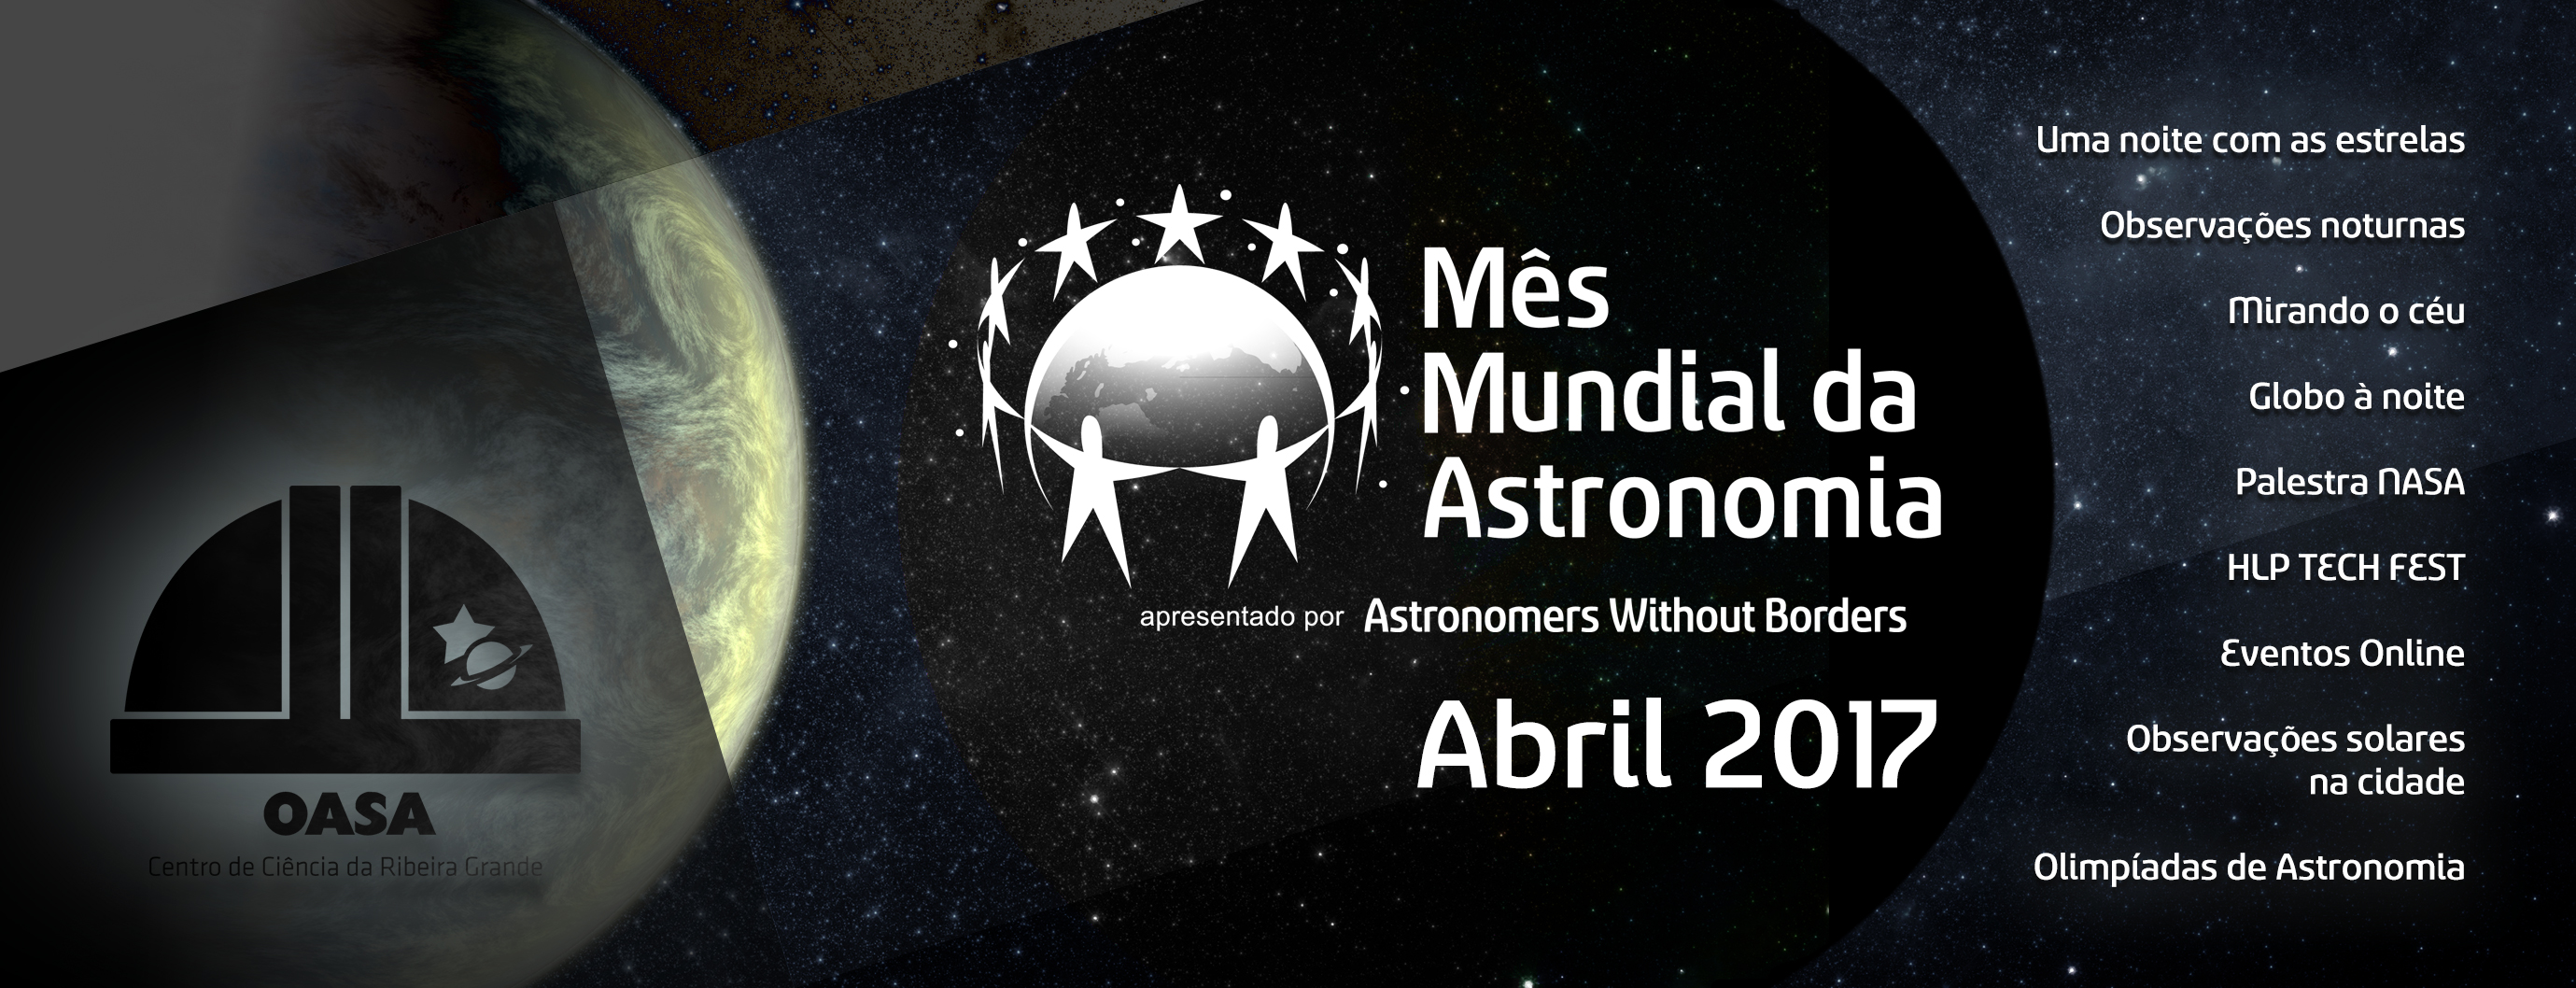 Mês Mundial da Astronomia 2017 | Observatório Astronómico de Santana - Açores